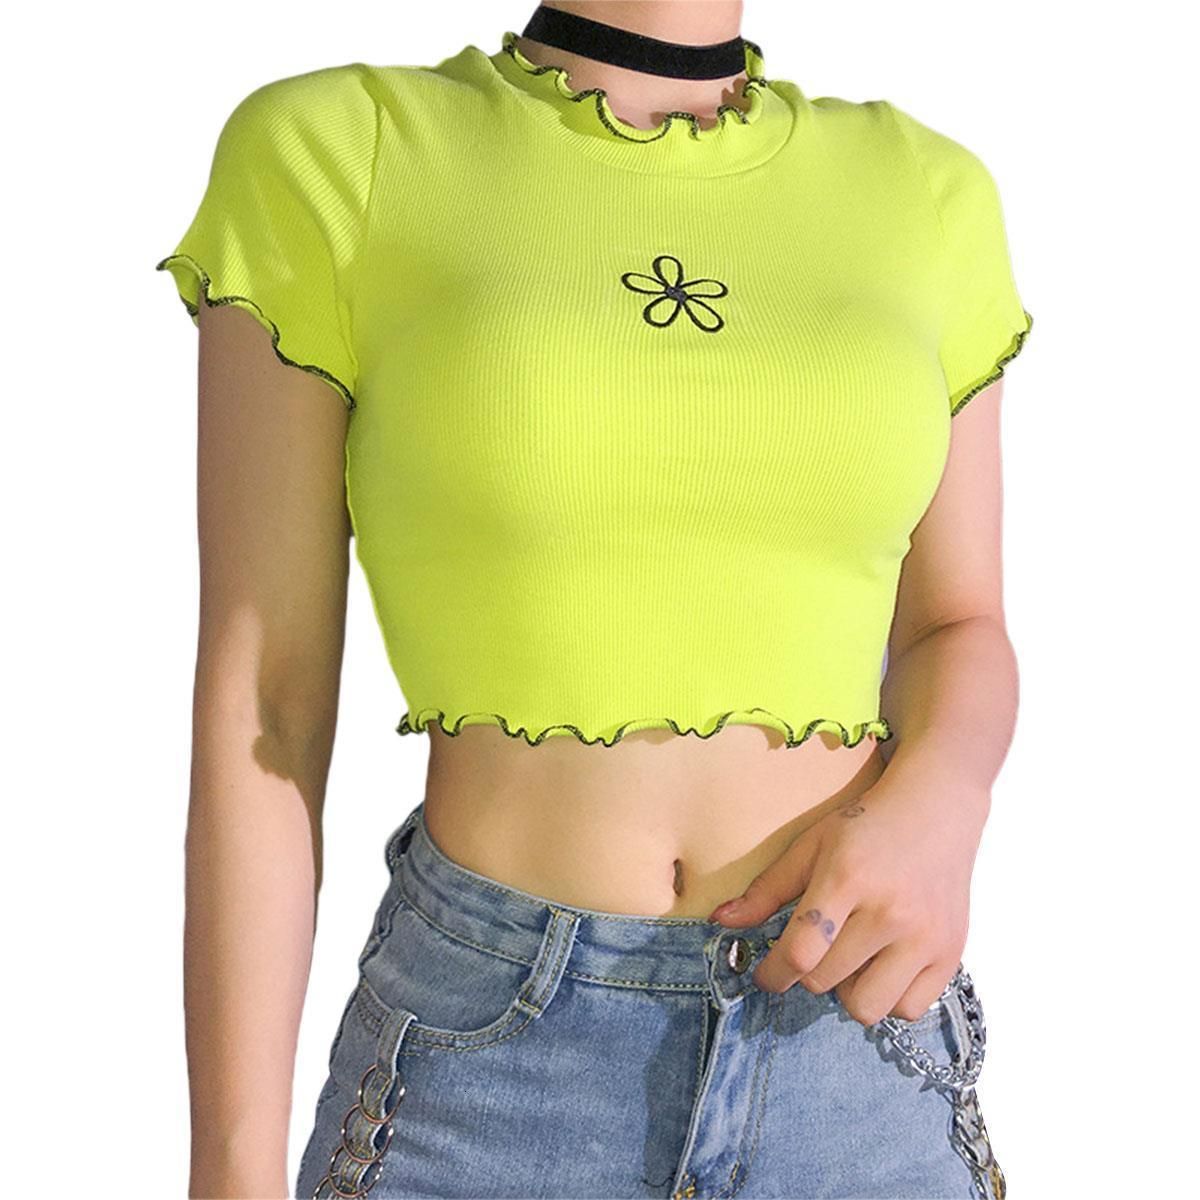 Blusas Para Mujer Moda Mujeres Chicas Camisa Verde Casual Slim Lace Camisetas Recortados Manga Corta Flor De Verano O Cuello De 19,05 € | DHgate